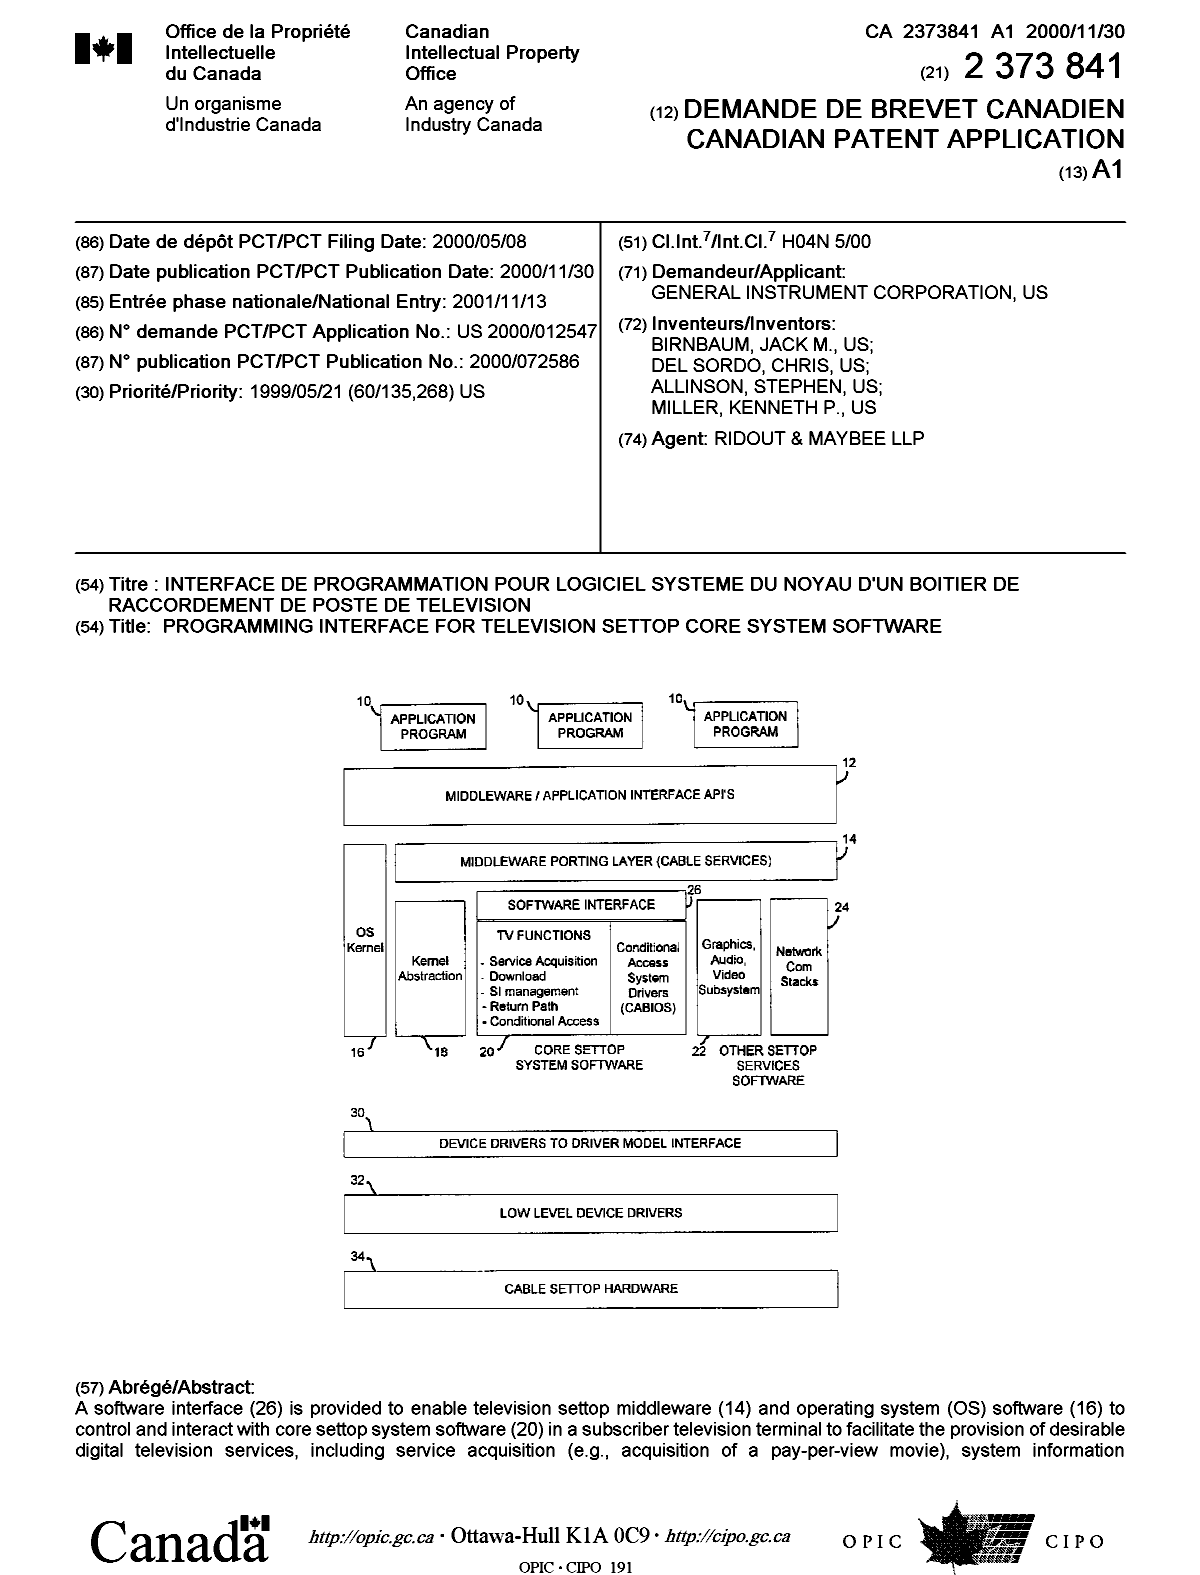 Document de brevet canadien 2373841. Page couverture 20020506. Image 1 de 2